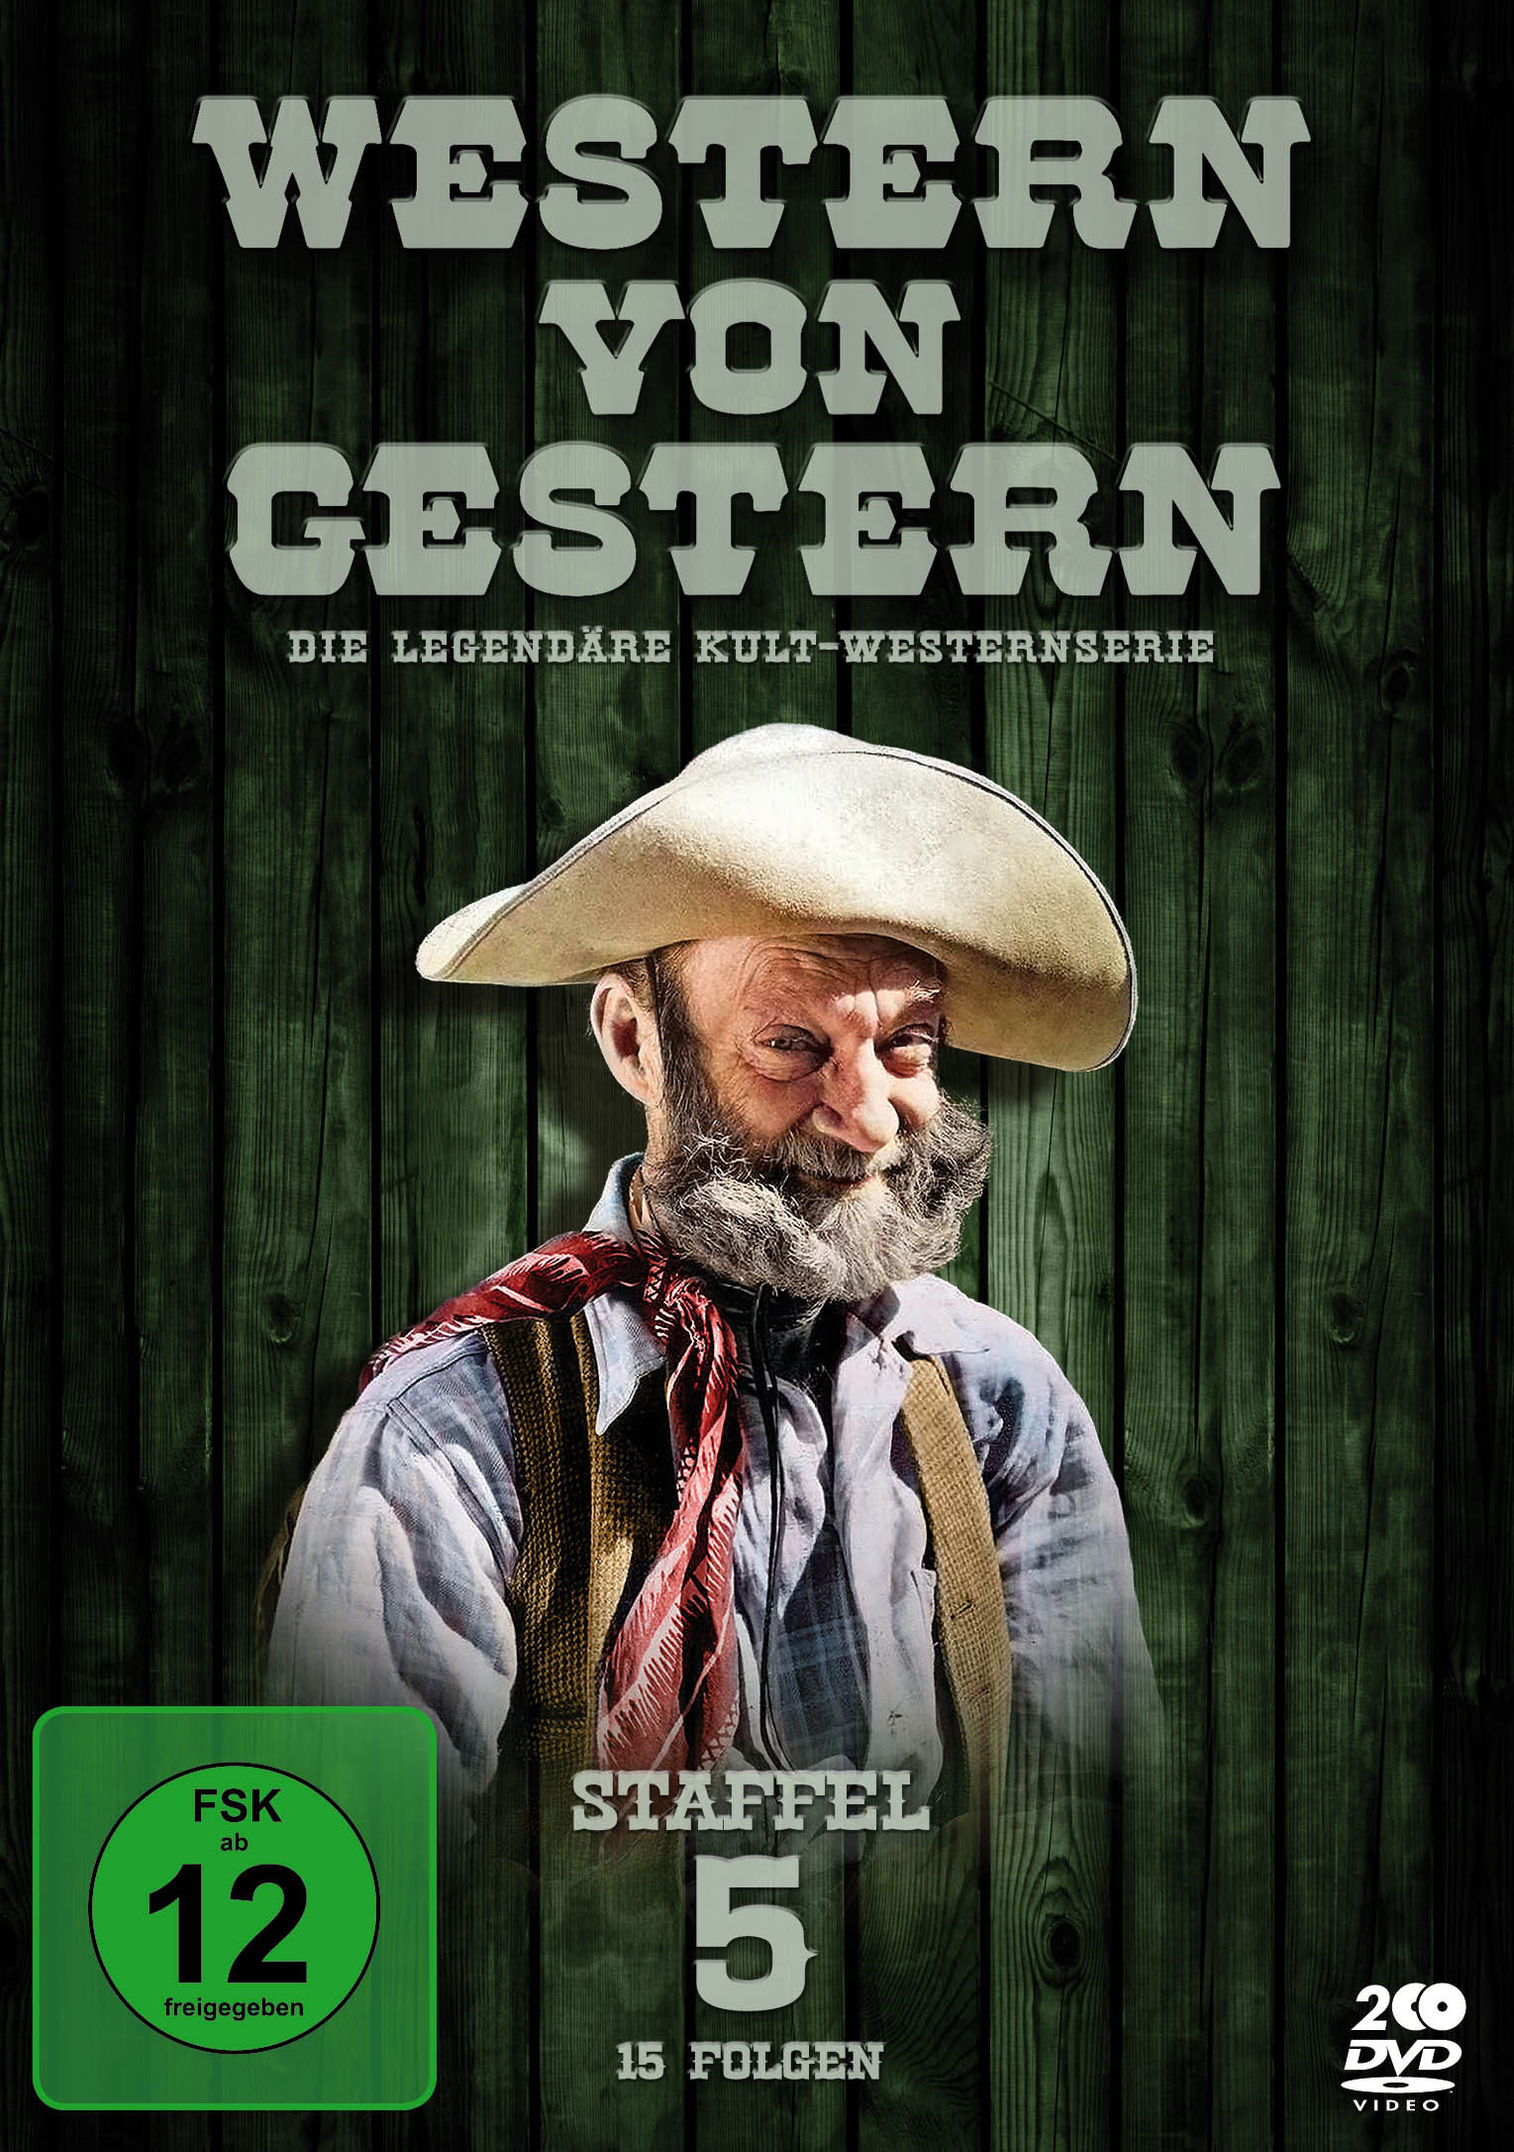 Western von Gestern - Staffel 5 DVD bei Weltbild.de bestellen